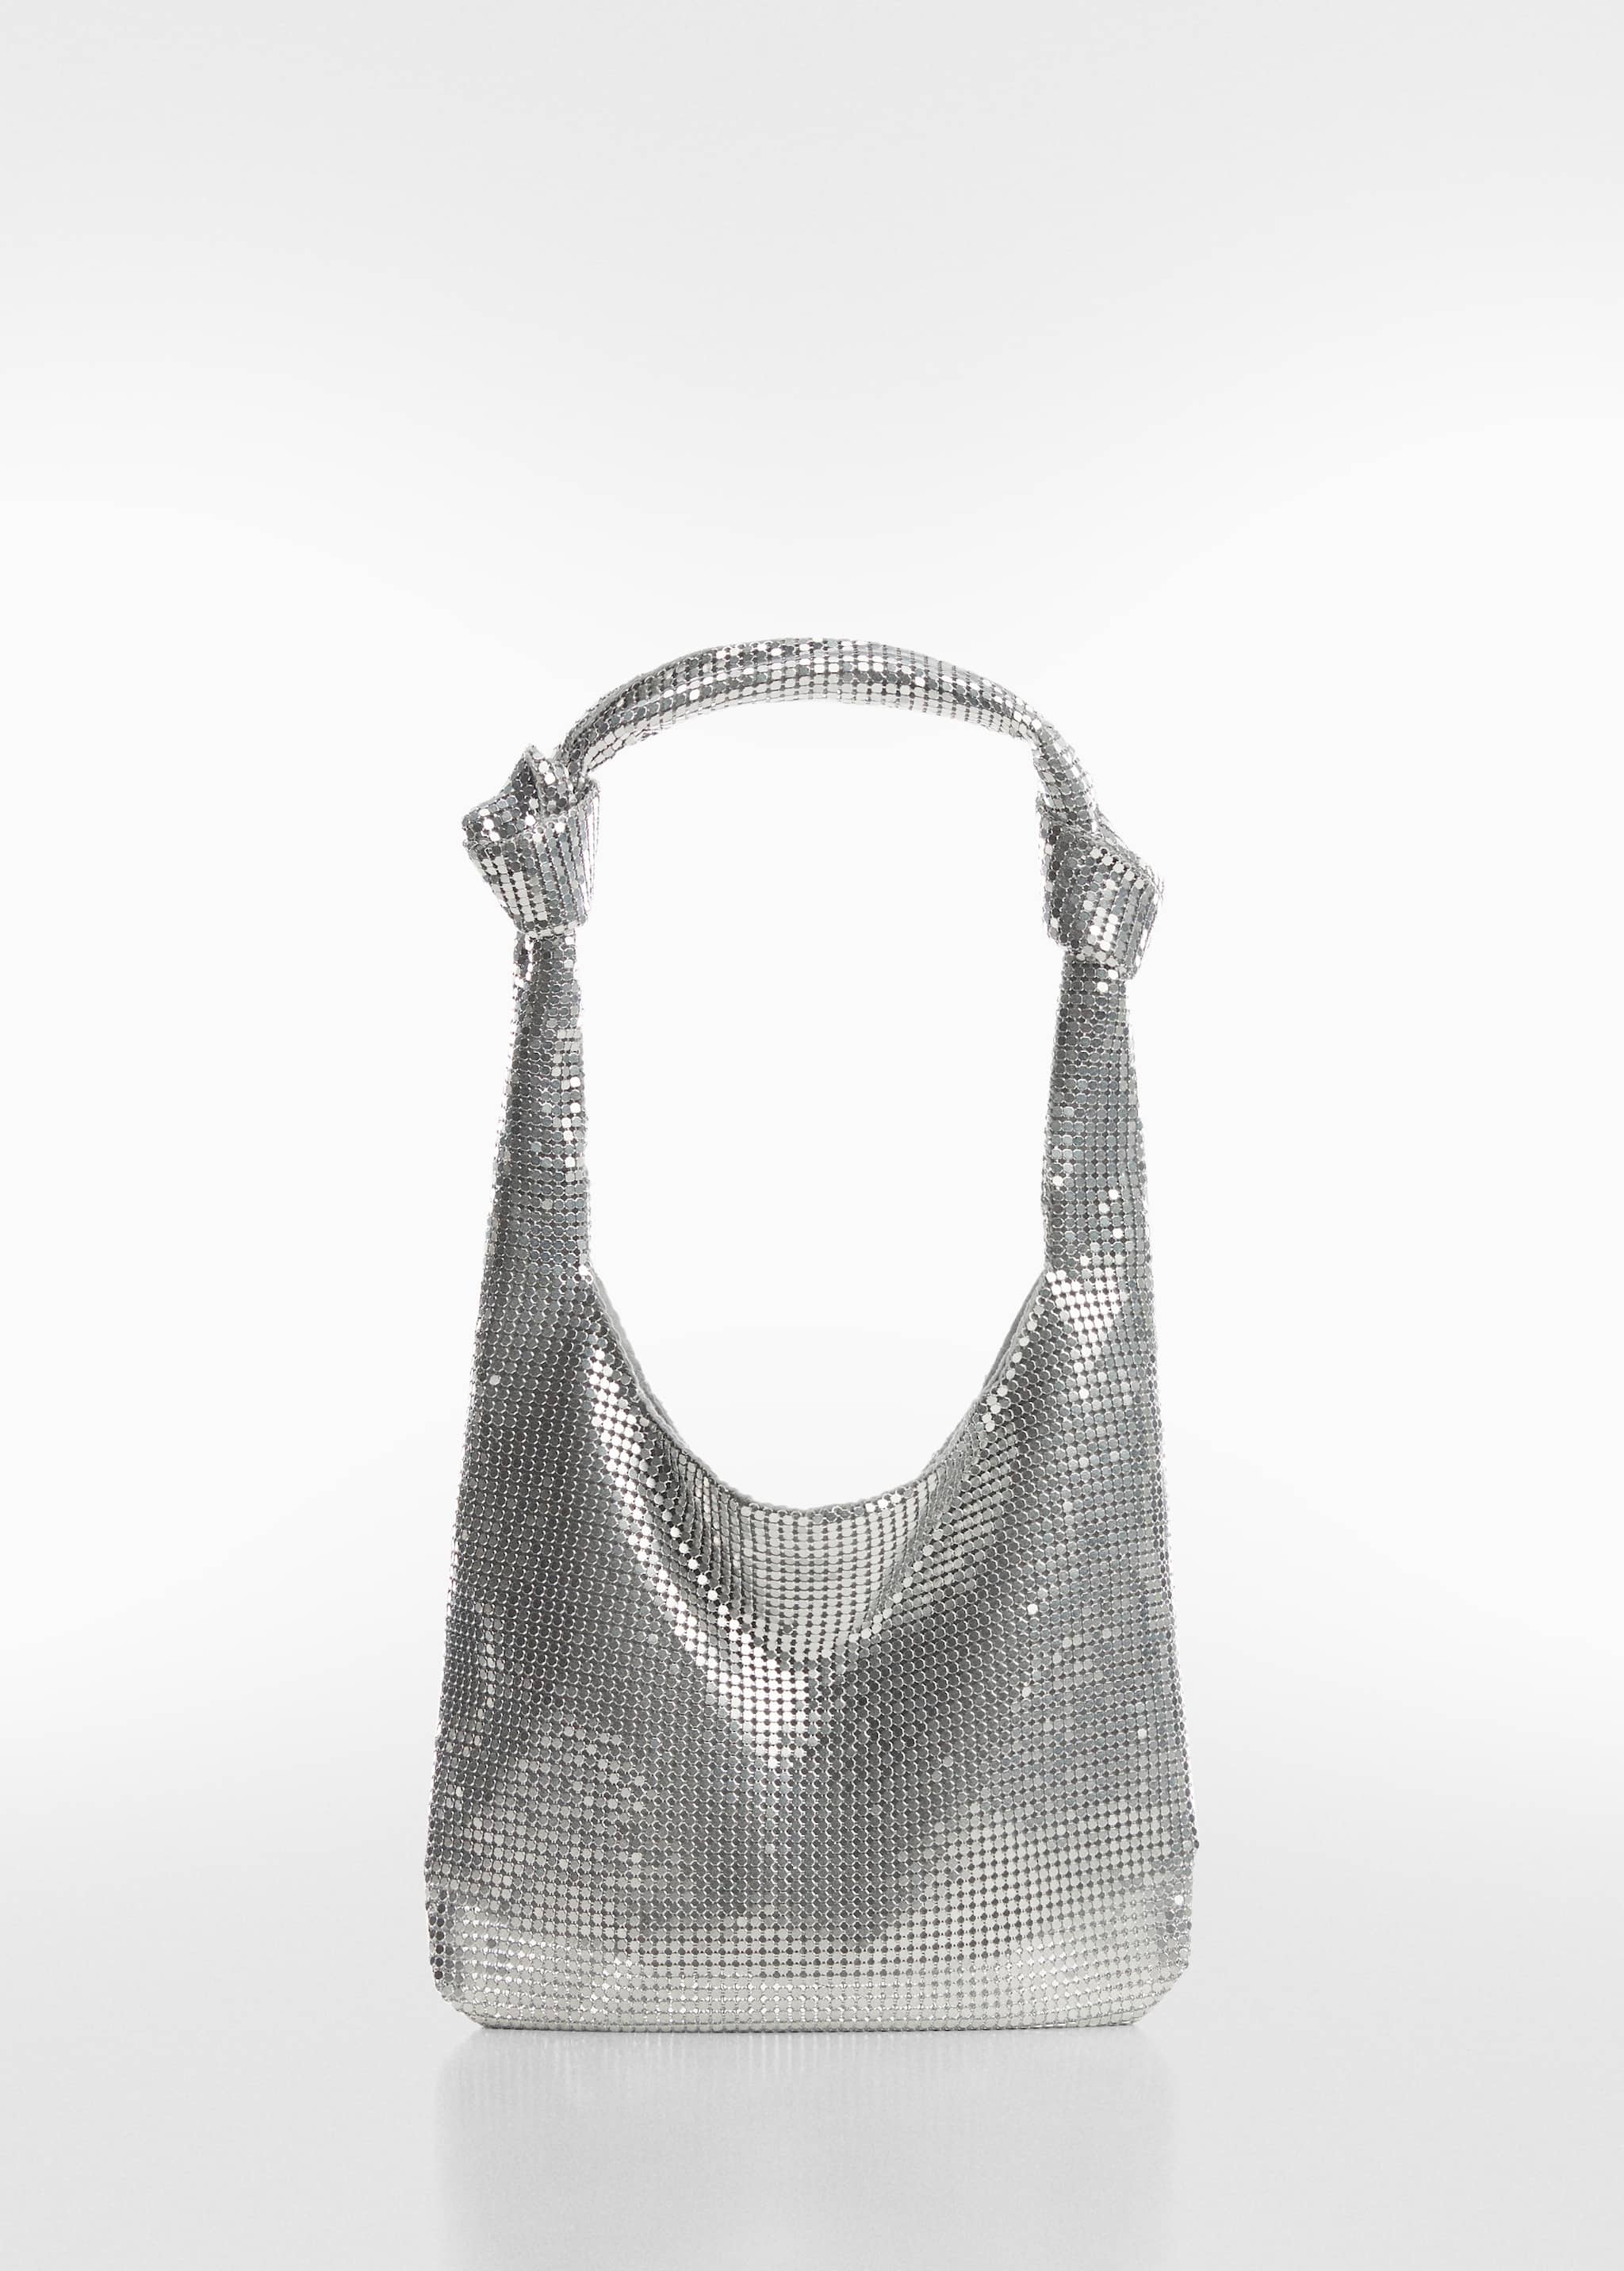 Crystal shoulder bag - Article without model